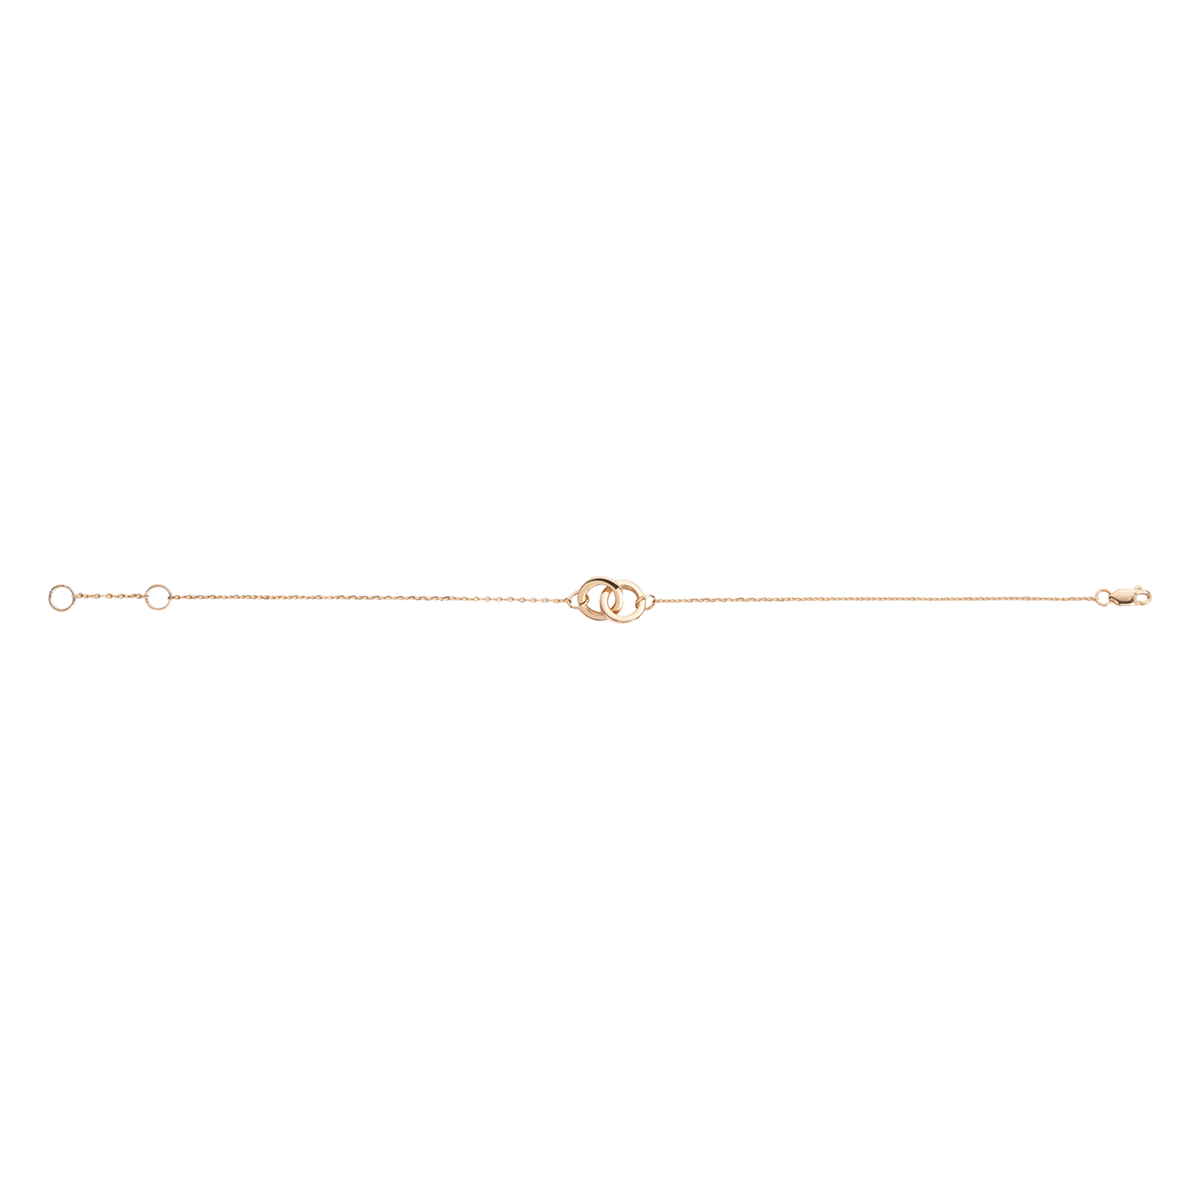 Rose Gold Mini 2mm Hook Bracelet – Anne Waddell Jewelry